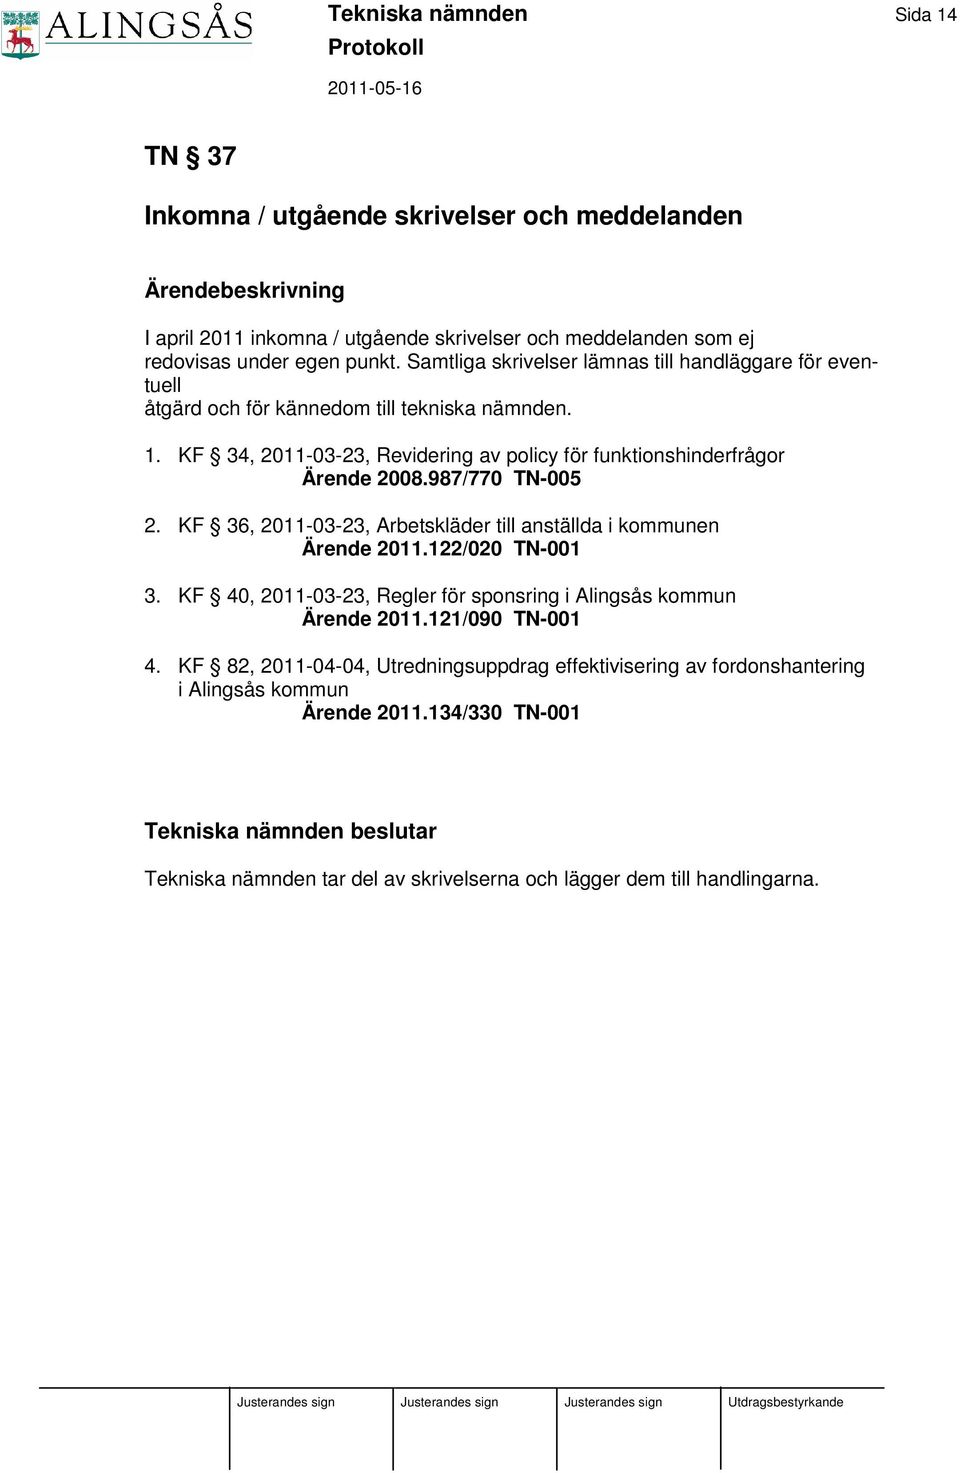 987/770 TN-005 2. KF 36, 2011-03-23, Arbetskläder till anställda i kommunen Ärende 2011.122/020 TN-001 3. KF 40, 2011-03-23, Regler för sponsring i Alingsås kommun Ärende 2011.121/090 TN-001 4.